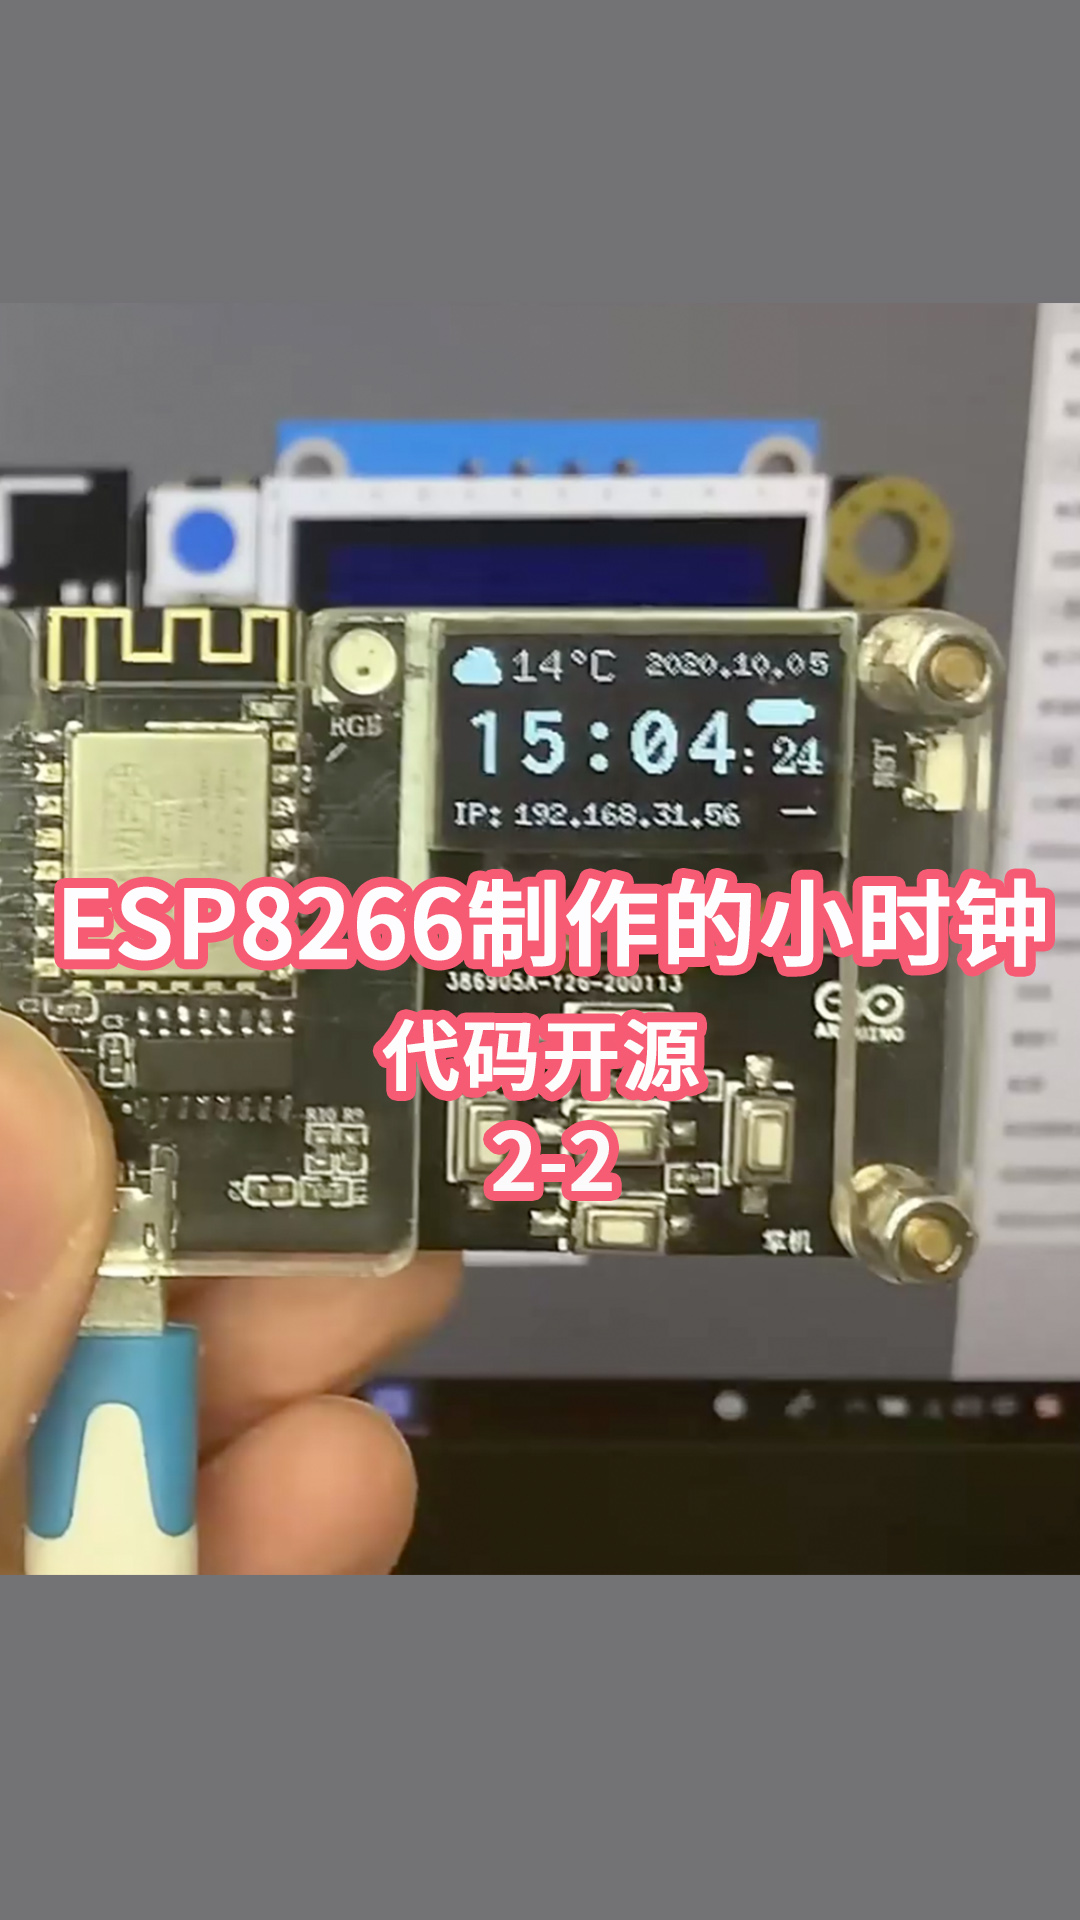 今年春節期間用ESP8266制作的小時鐘啦-代碼開源2-2